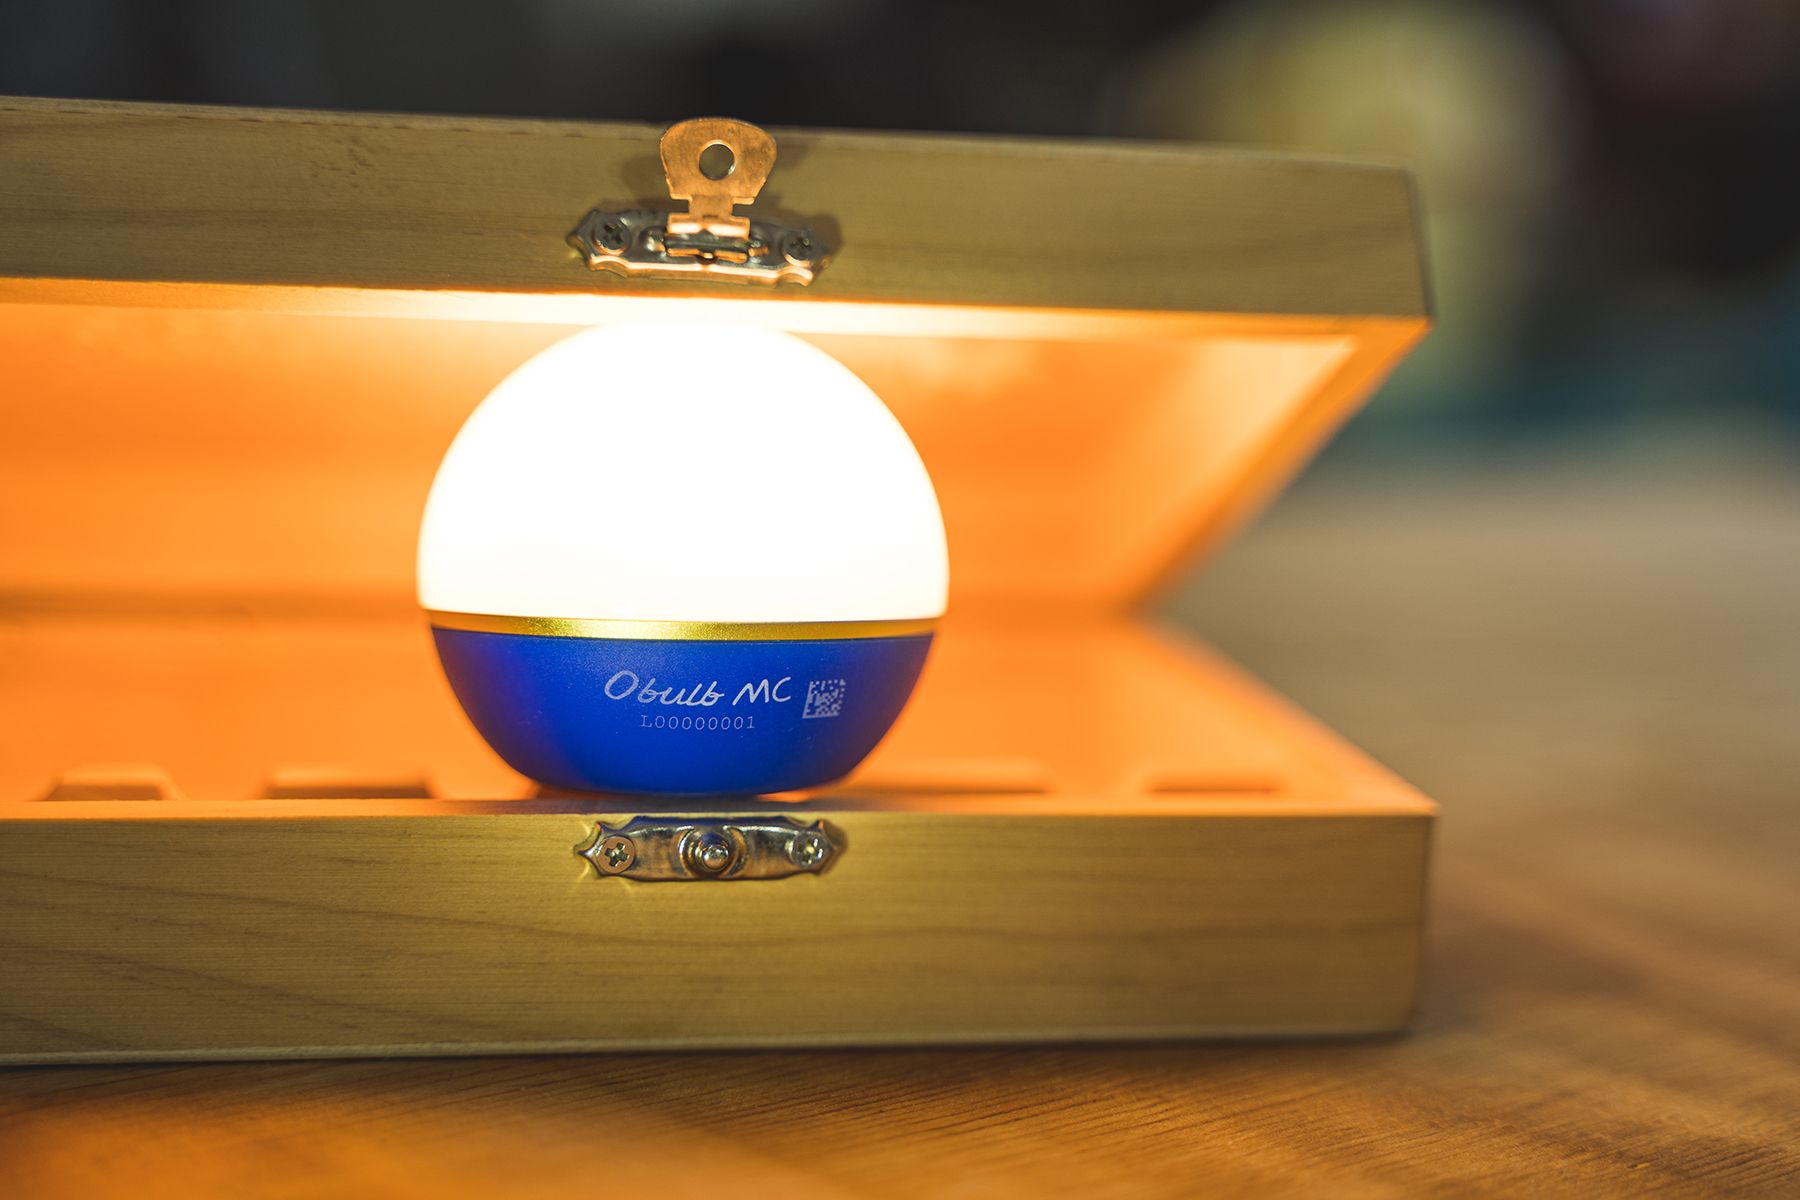 【限量藍色】Olight Obulb MC 多彩光源球燈 1.5米防摔 防水 露營燈 居家照明 氣氛燈 警示燈 磁吸